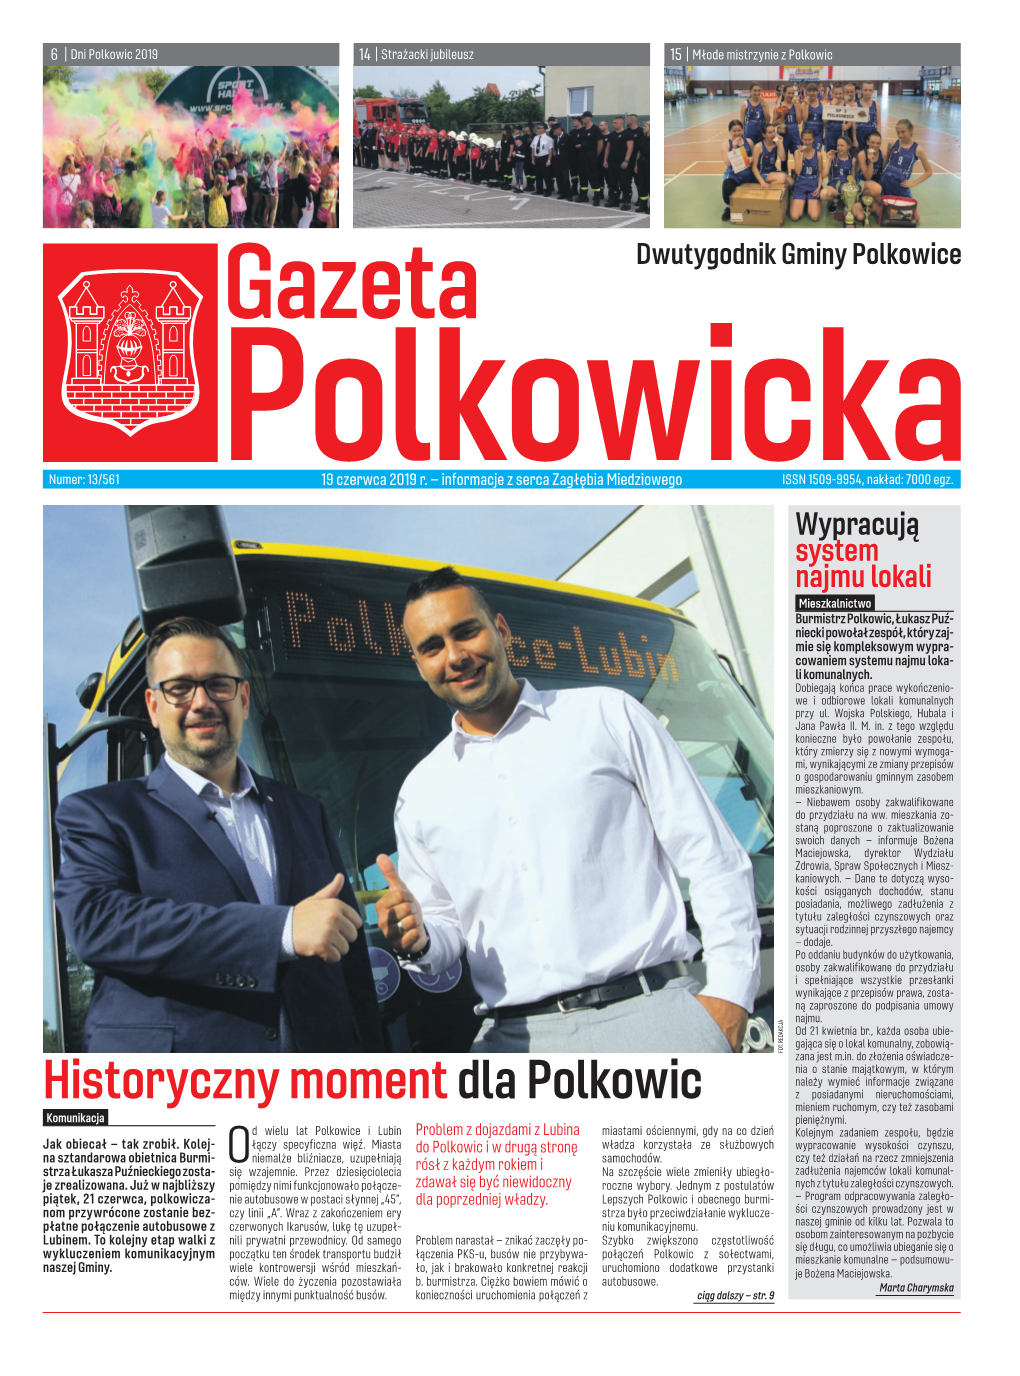 Historyczny Moment Dla Polkowic Z Posiadanymi Nieruchomościami, Mieniem Ruchomym, Czy Też Zasobami Komunikacja Pieniężnymi